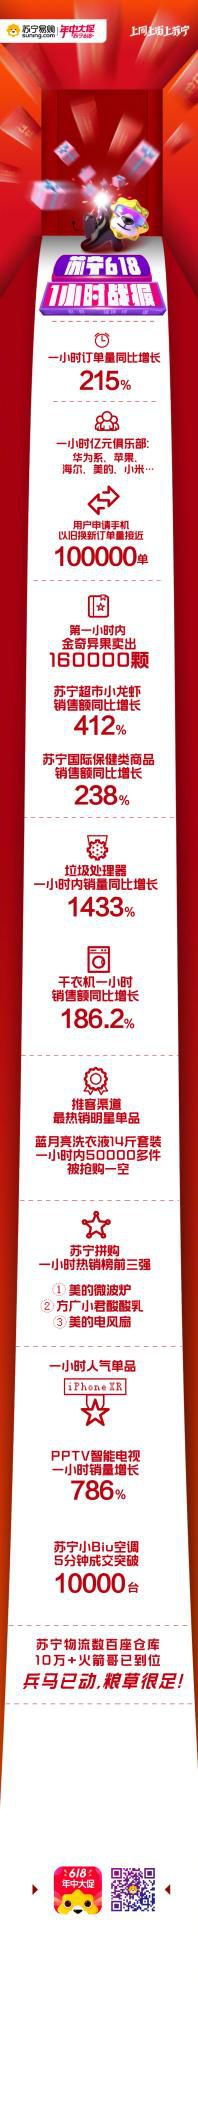 苏宁618开局战报 1小时酒水销售增长79%